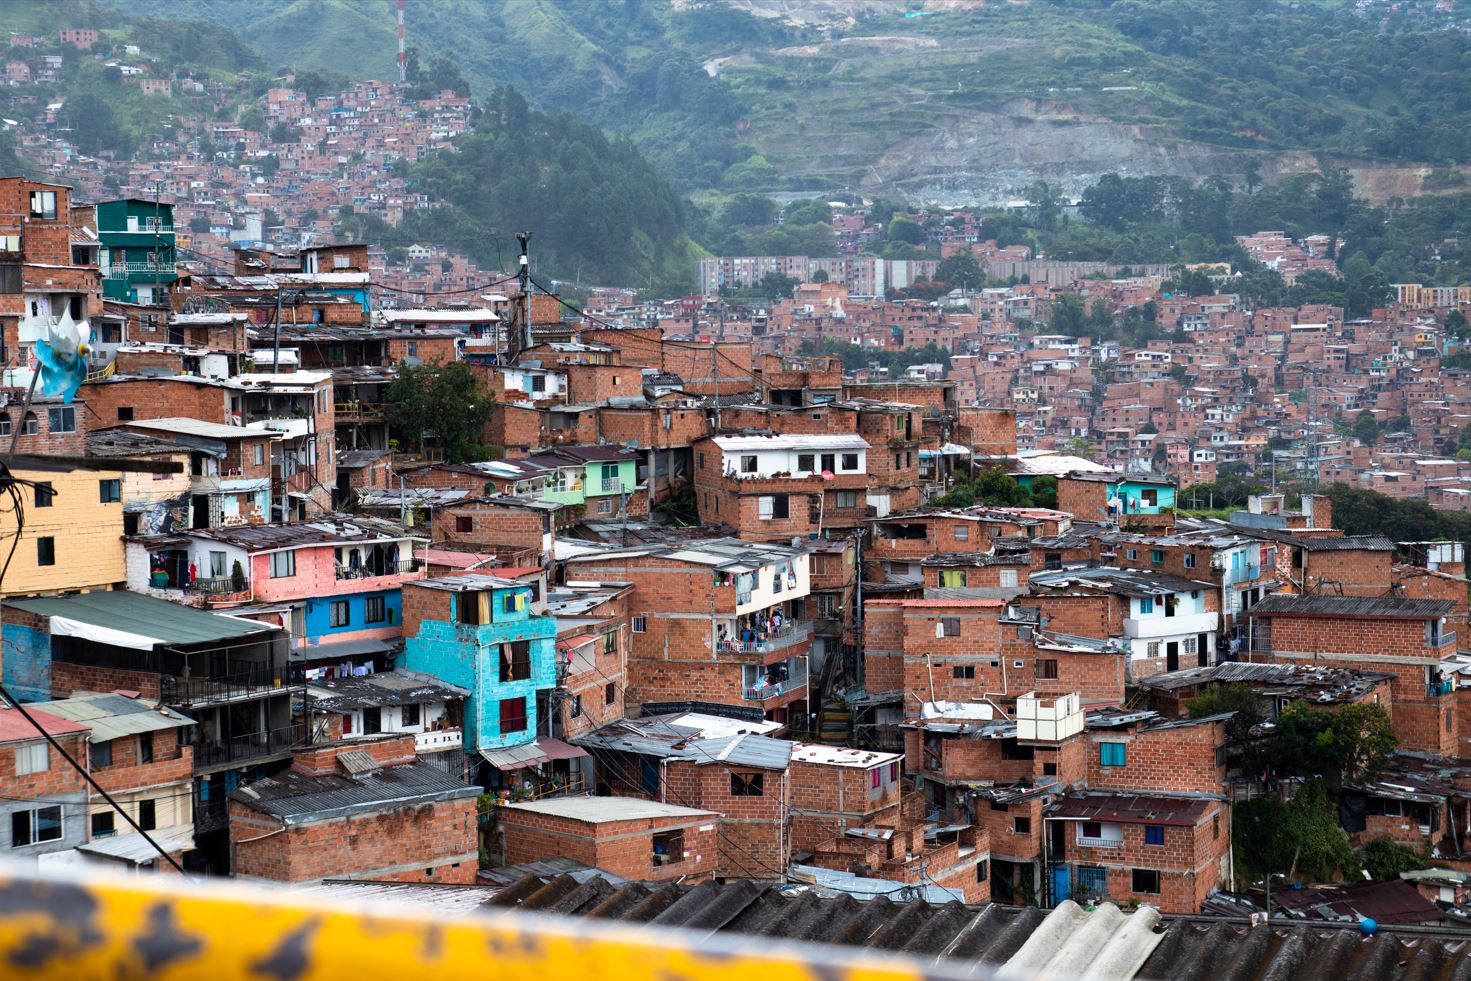 Comuna v kopcoch Medellínu.